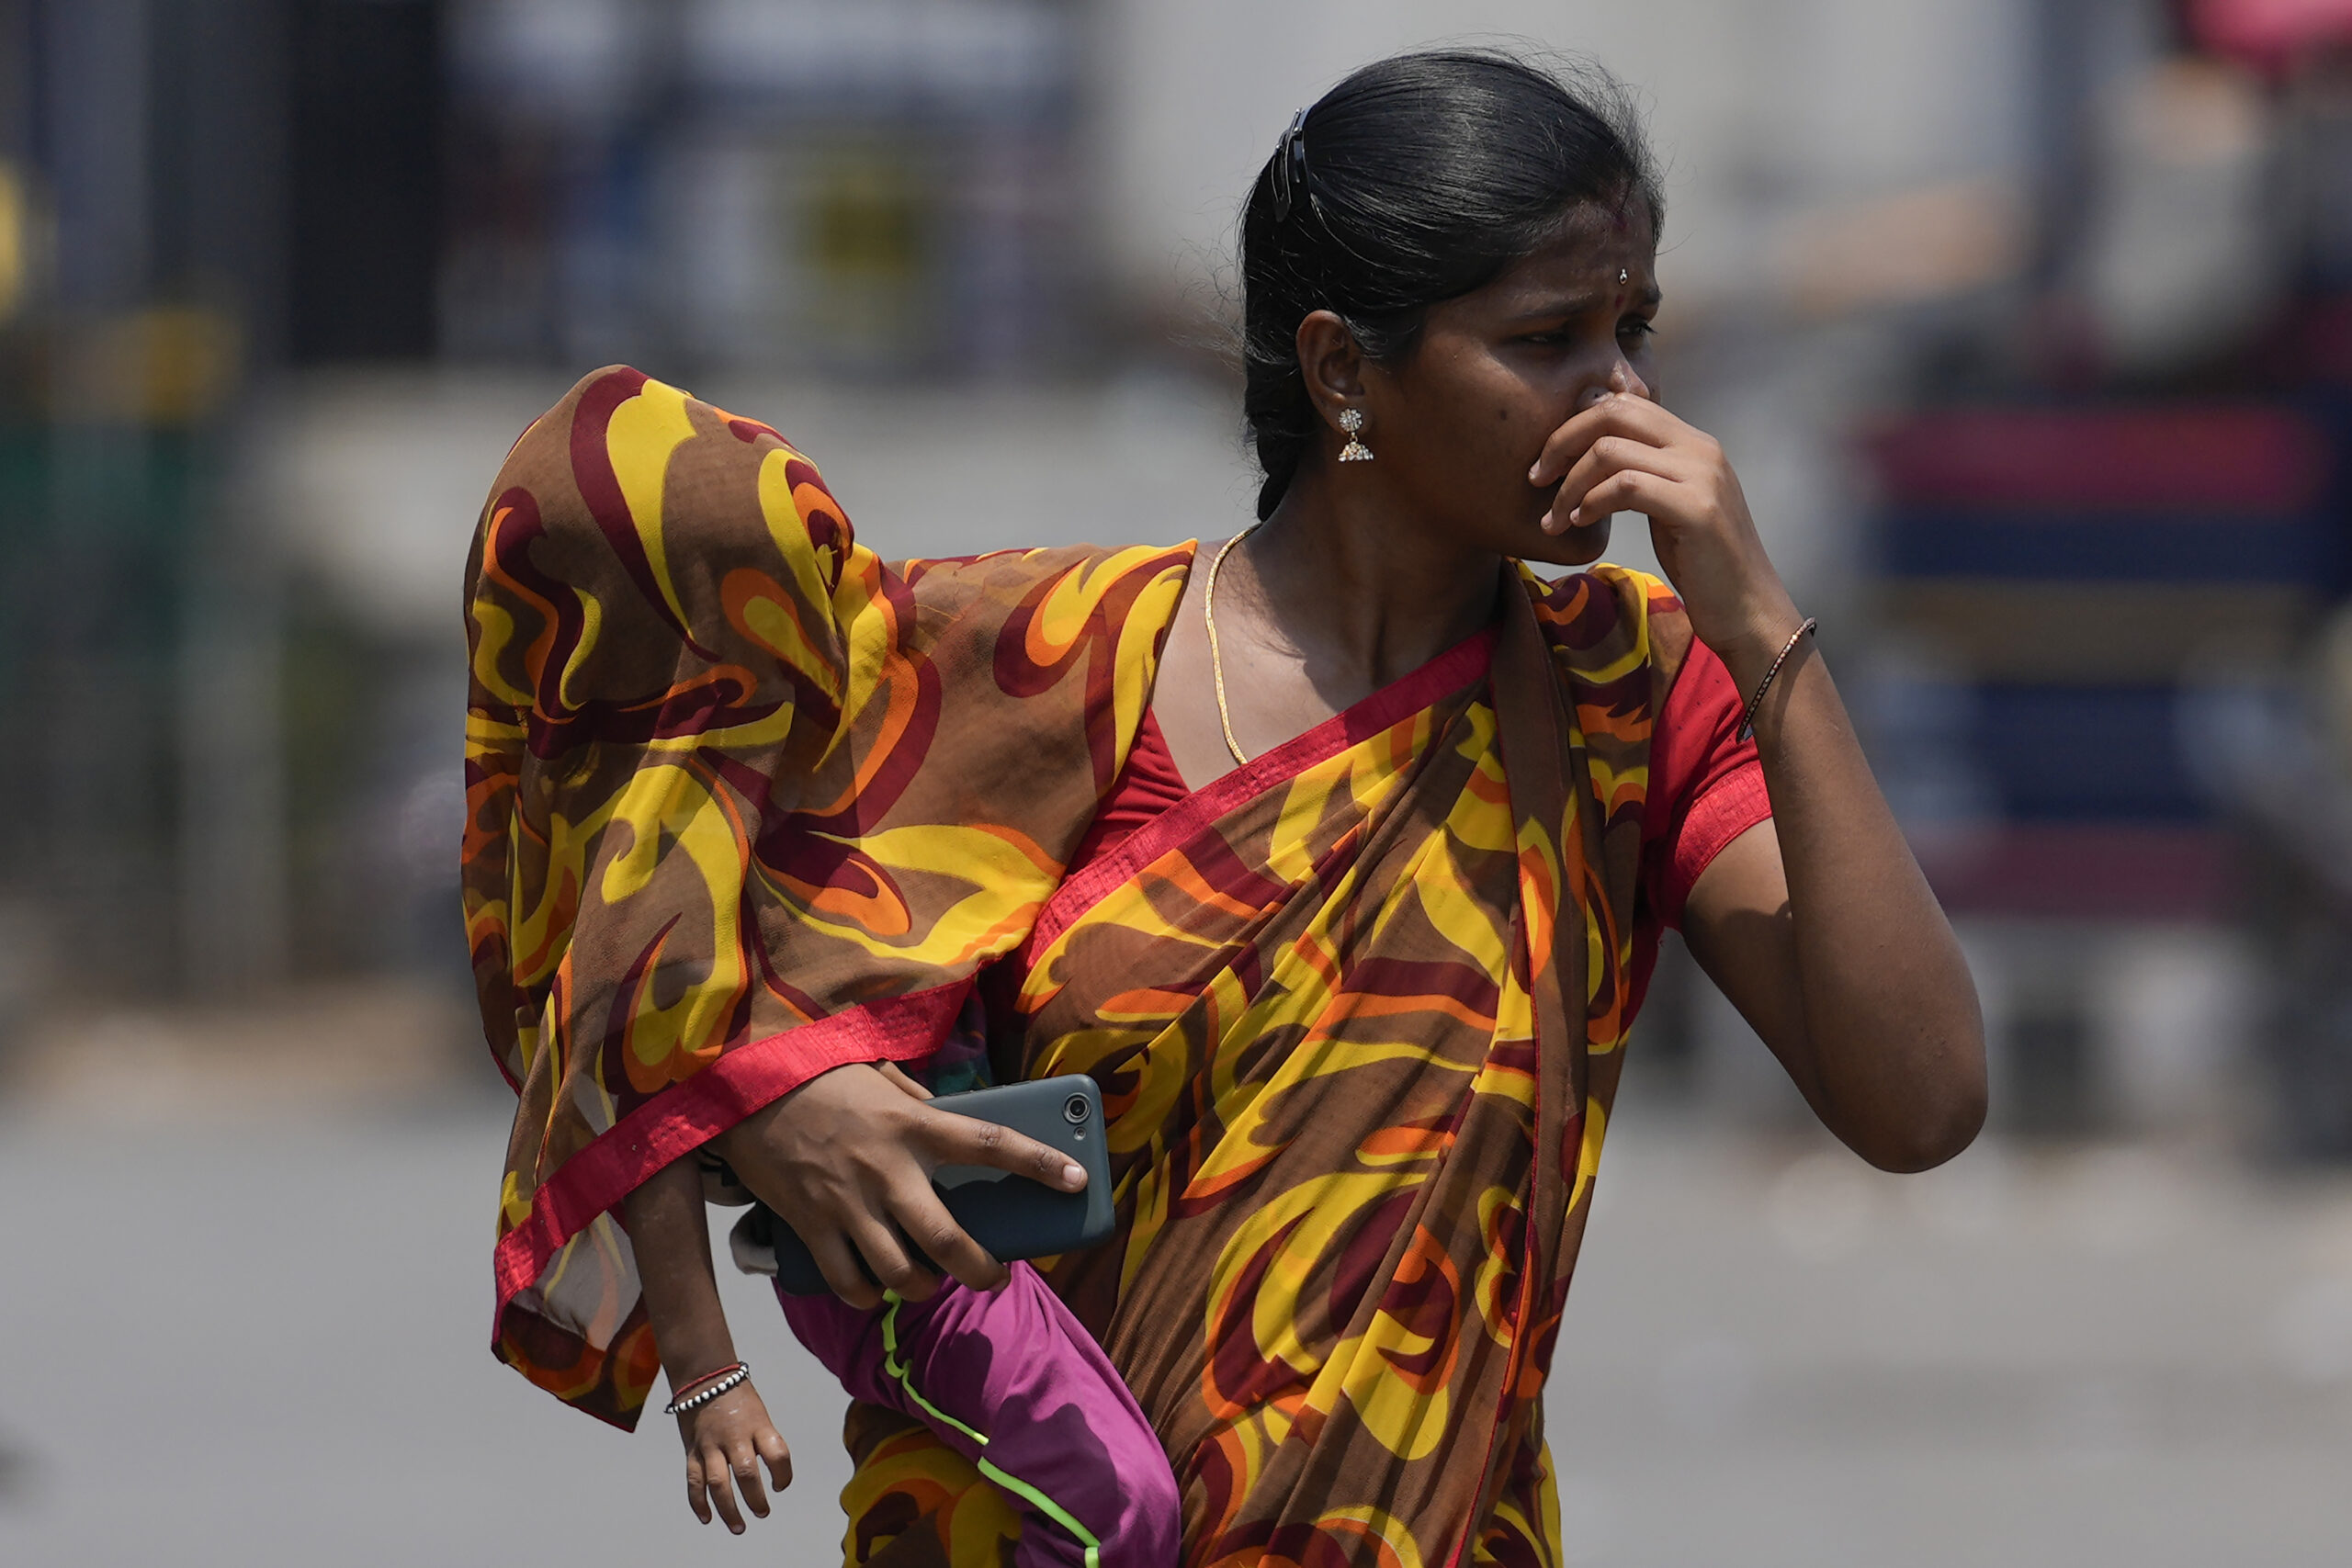 Ασία: Στους 50 βαθμούς Κελσίου η θερμοκρασία στο νότιο Πακιστάν – Θάνατοι από θερμοπληξία στην Ινδία εν αναμονή κυκλώνα